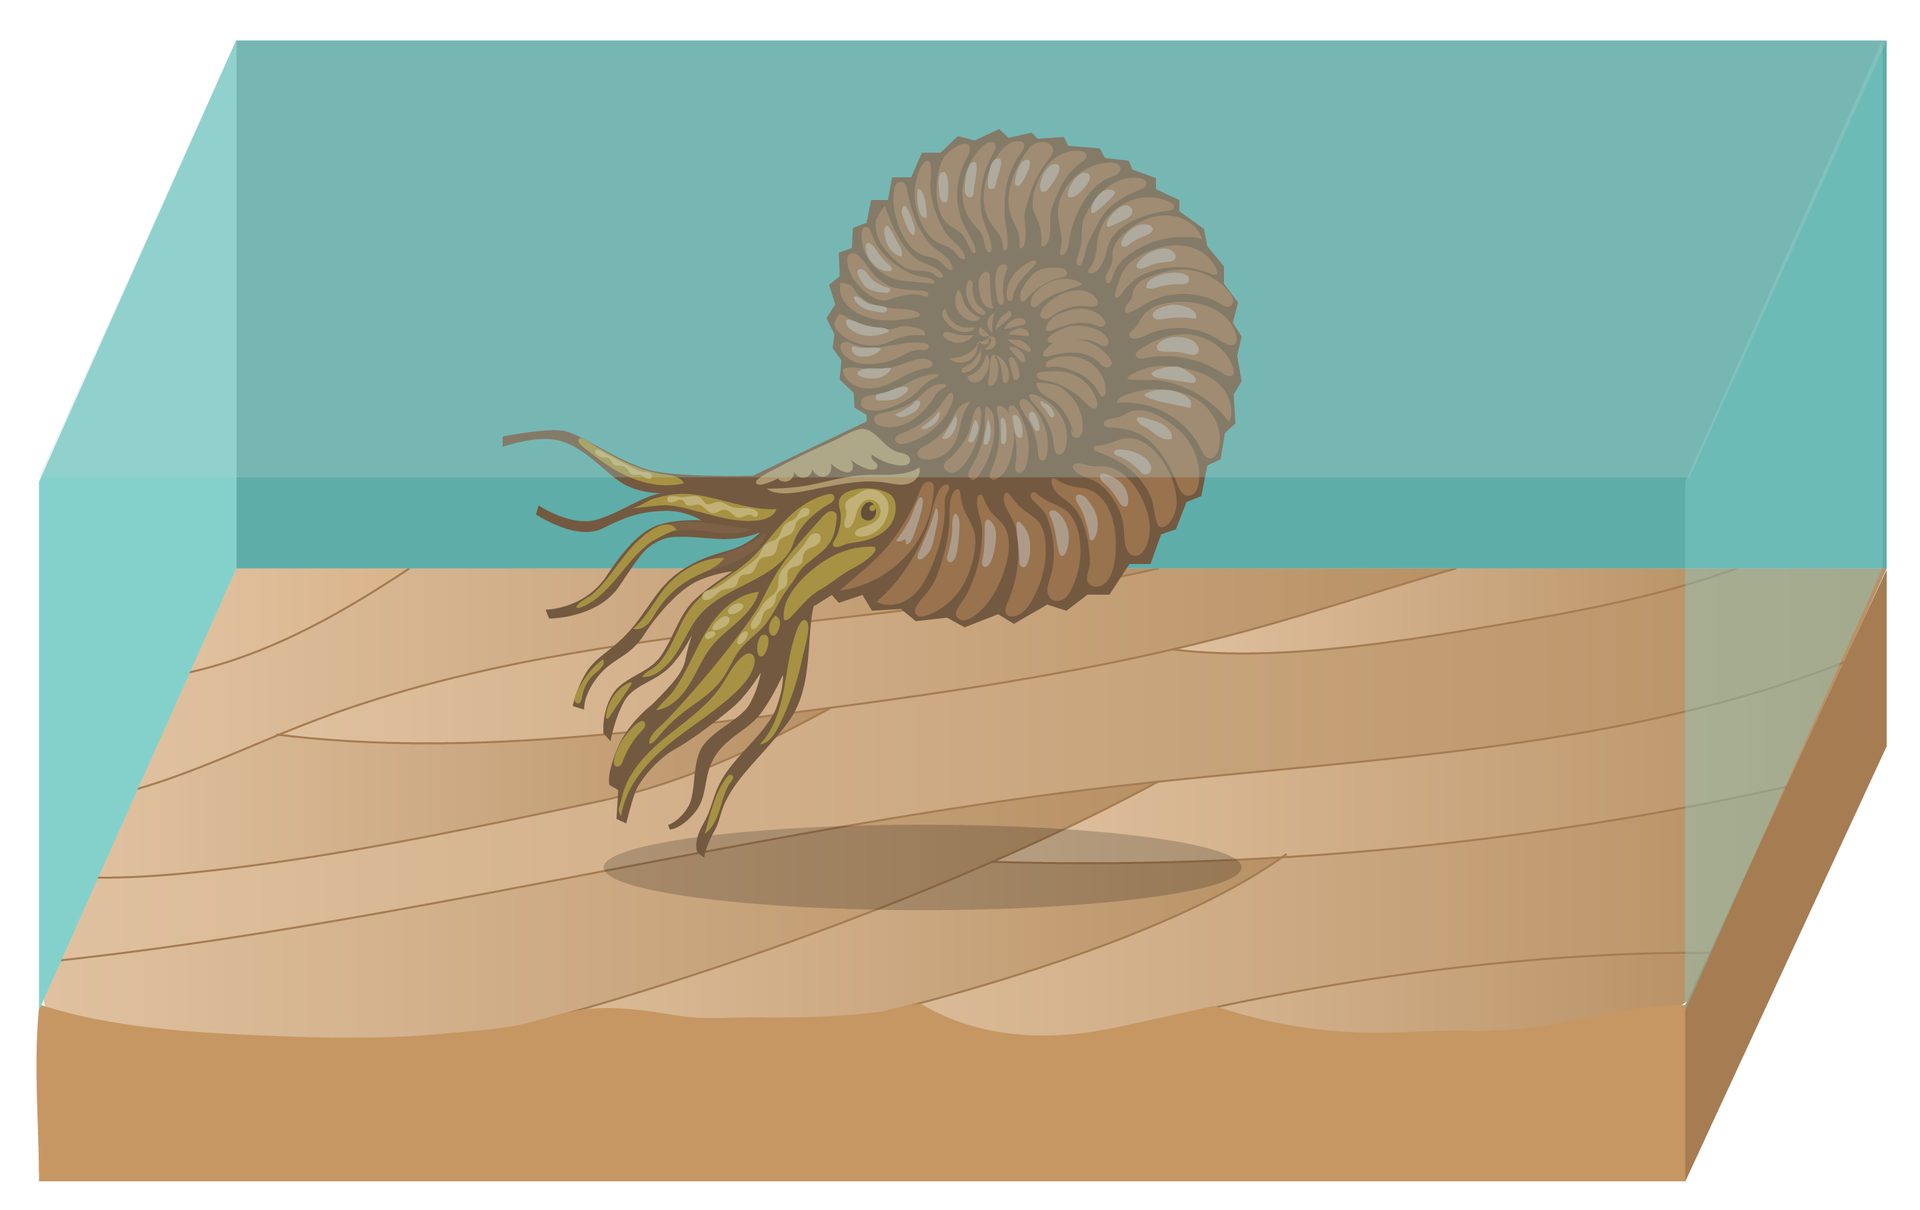 Rysunek przedstawia brązowego amonita w błękitnej wodzie nad brązowym, pofalowanym dnem morza. Amonit ma spiralną, pierścieniowatą muszlę, oczy i liczne czułki.